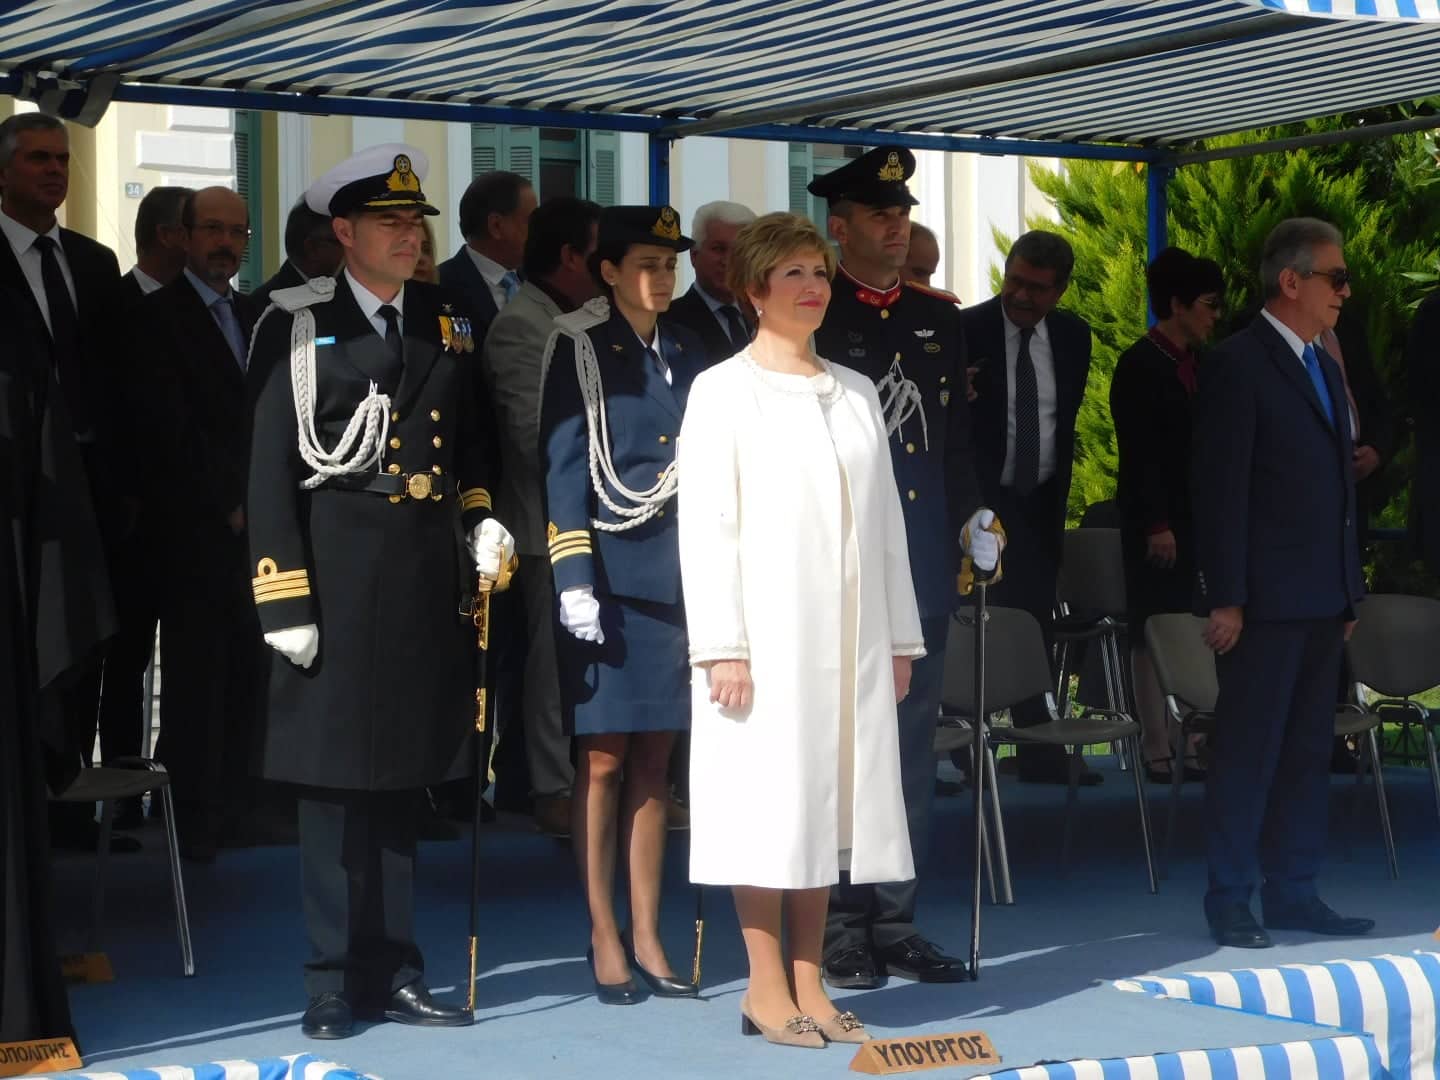 Μαρία Κόλλια Τσαρουχά εκπροσώπησε την Ελληνική Κυβέρνηση στον εορτασμό της 28ης Οκτωβρίου στην πόλη τ